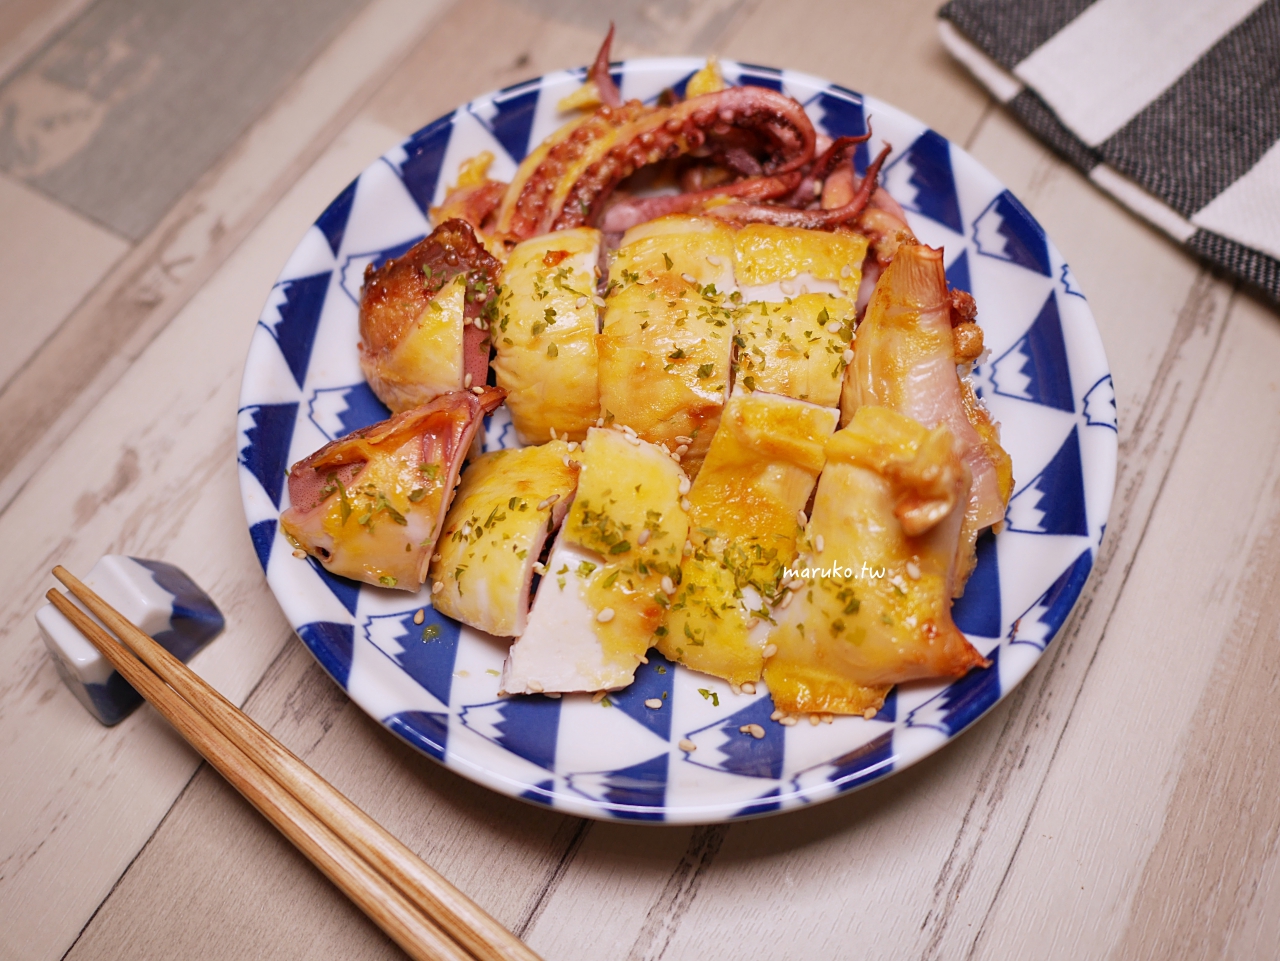 【食譜】蛋烤小卷 魷魚一夜干氣炸鍋食譜 海產店的招牌菜簡單就上手 @Maruko與美食有個約會